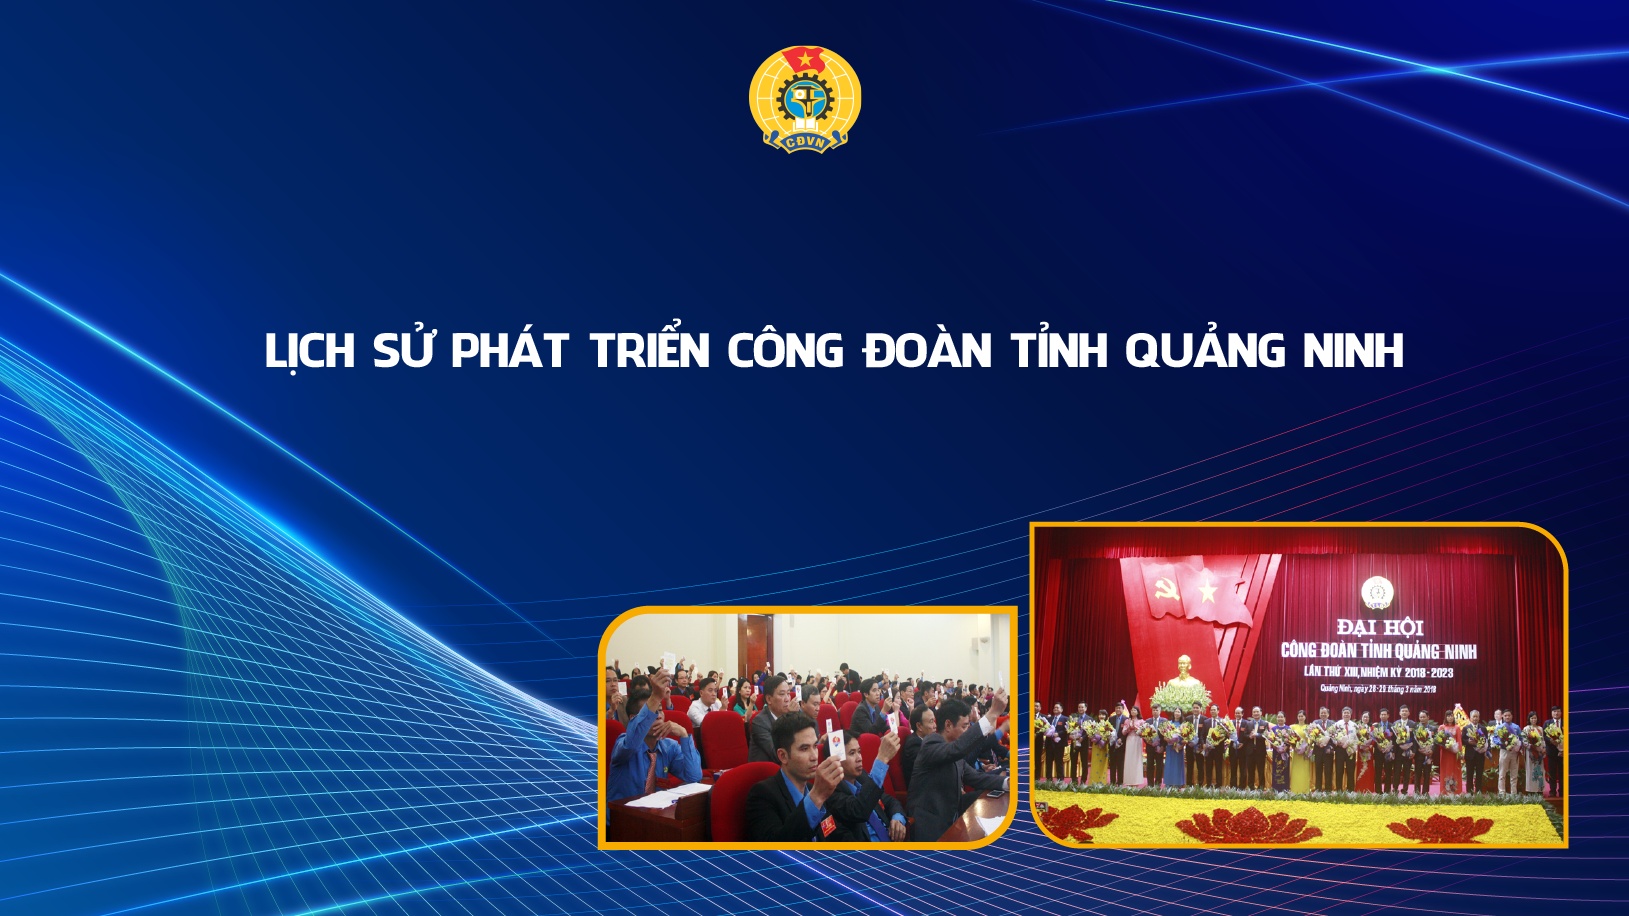 Lịch sử phát triển Công đoàn tỉnh Quảng Ninh